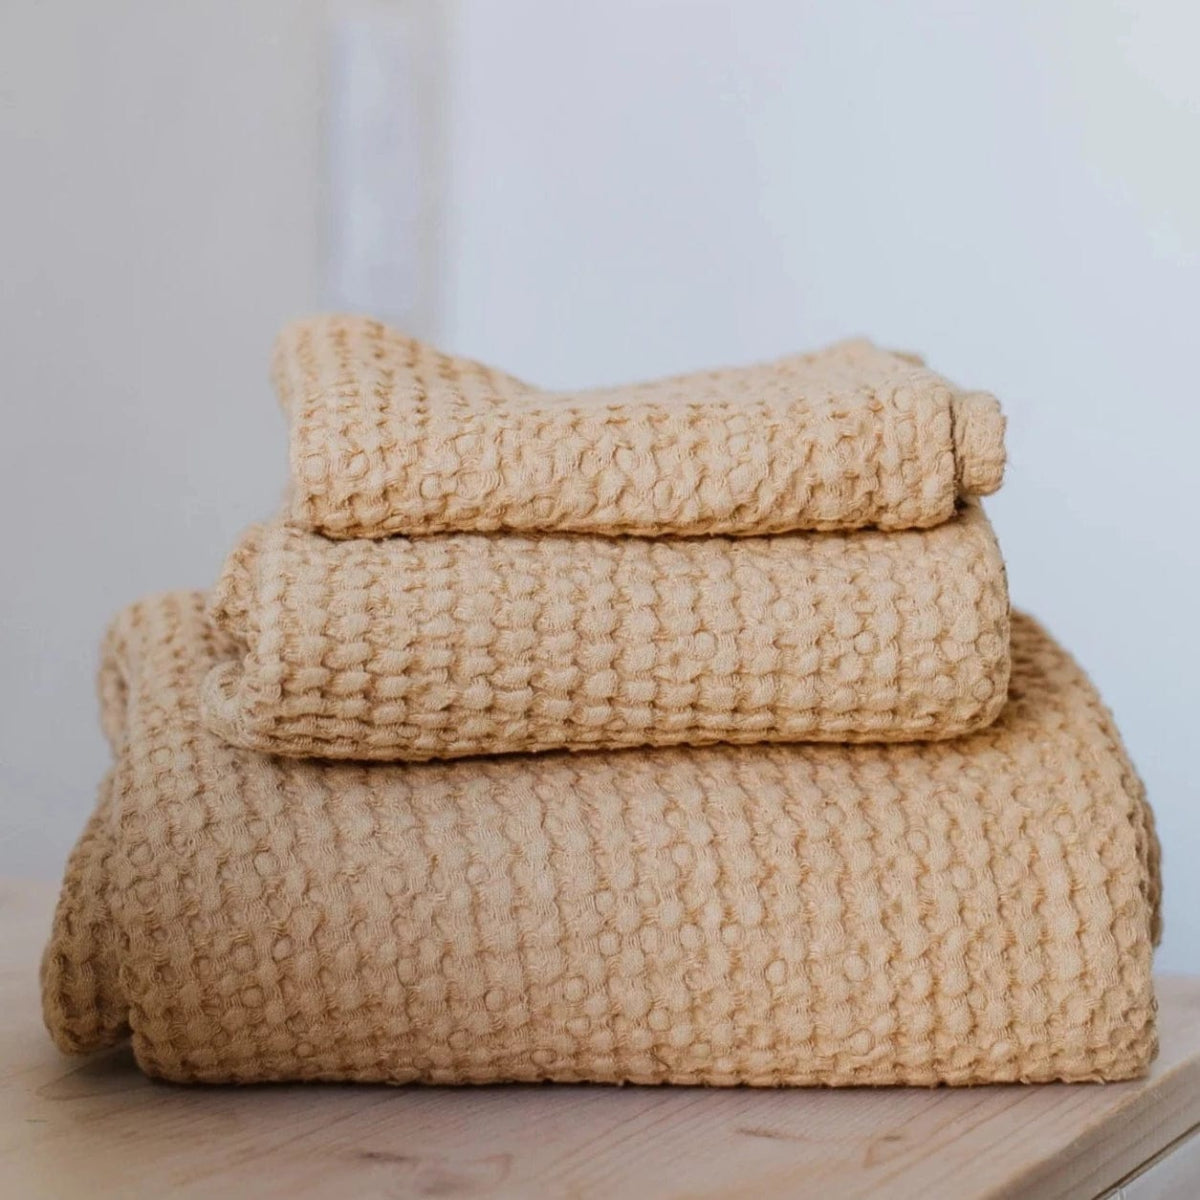 Linen Bath Towels in Waffle Weave